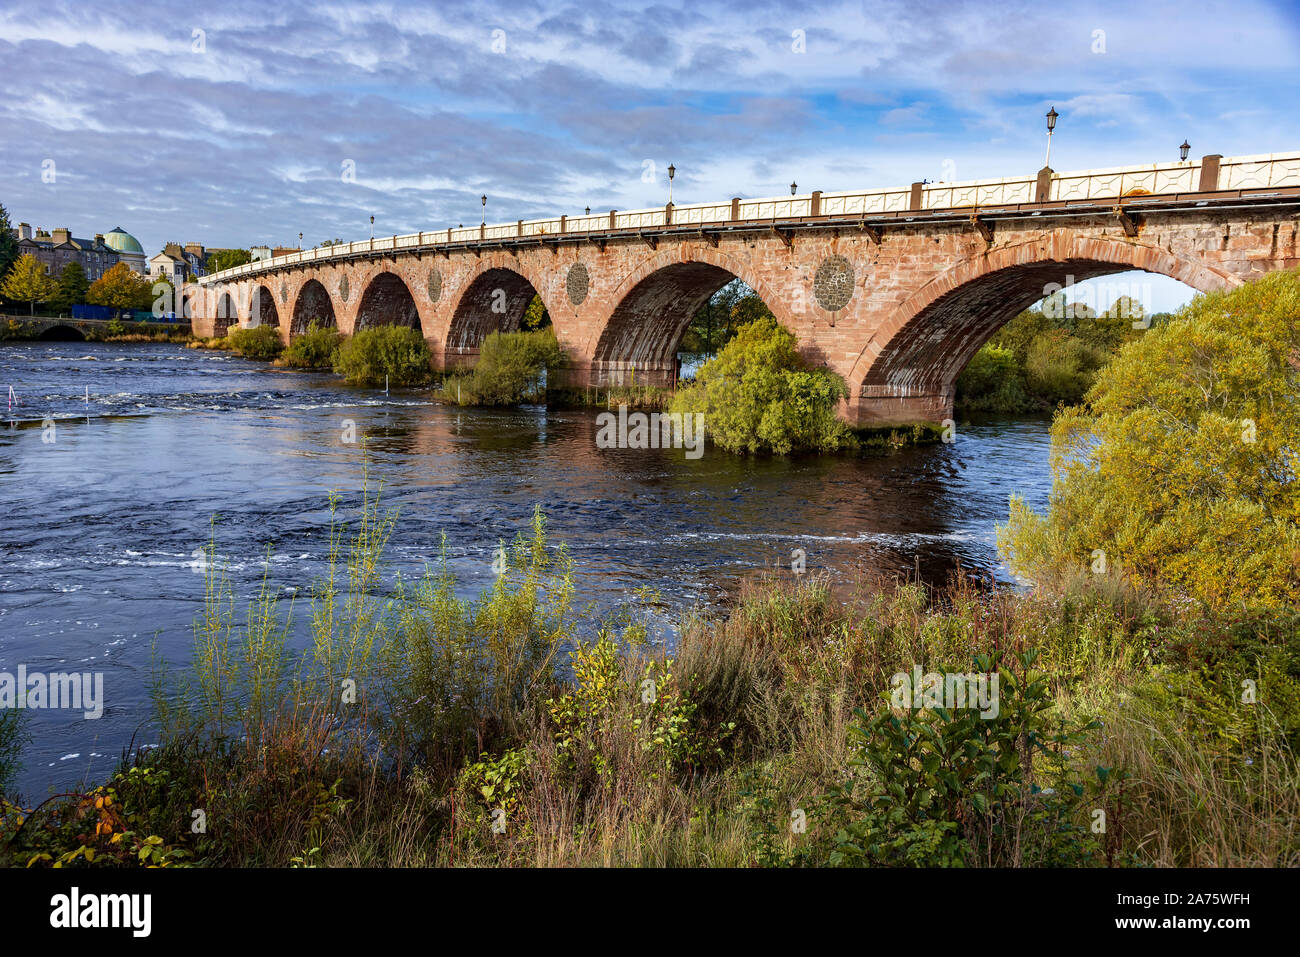 Smeaton's bridge. The old bridge over the river Tay at Perth. Stock Photo